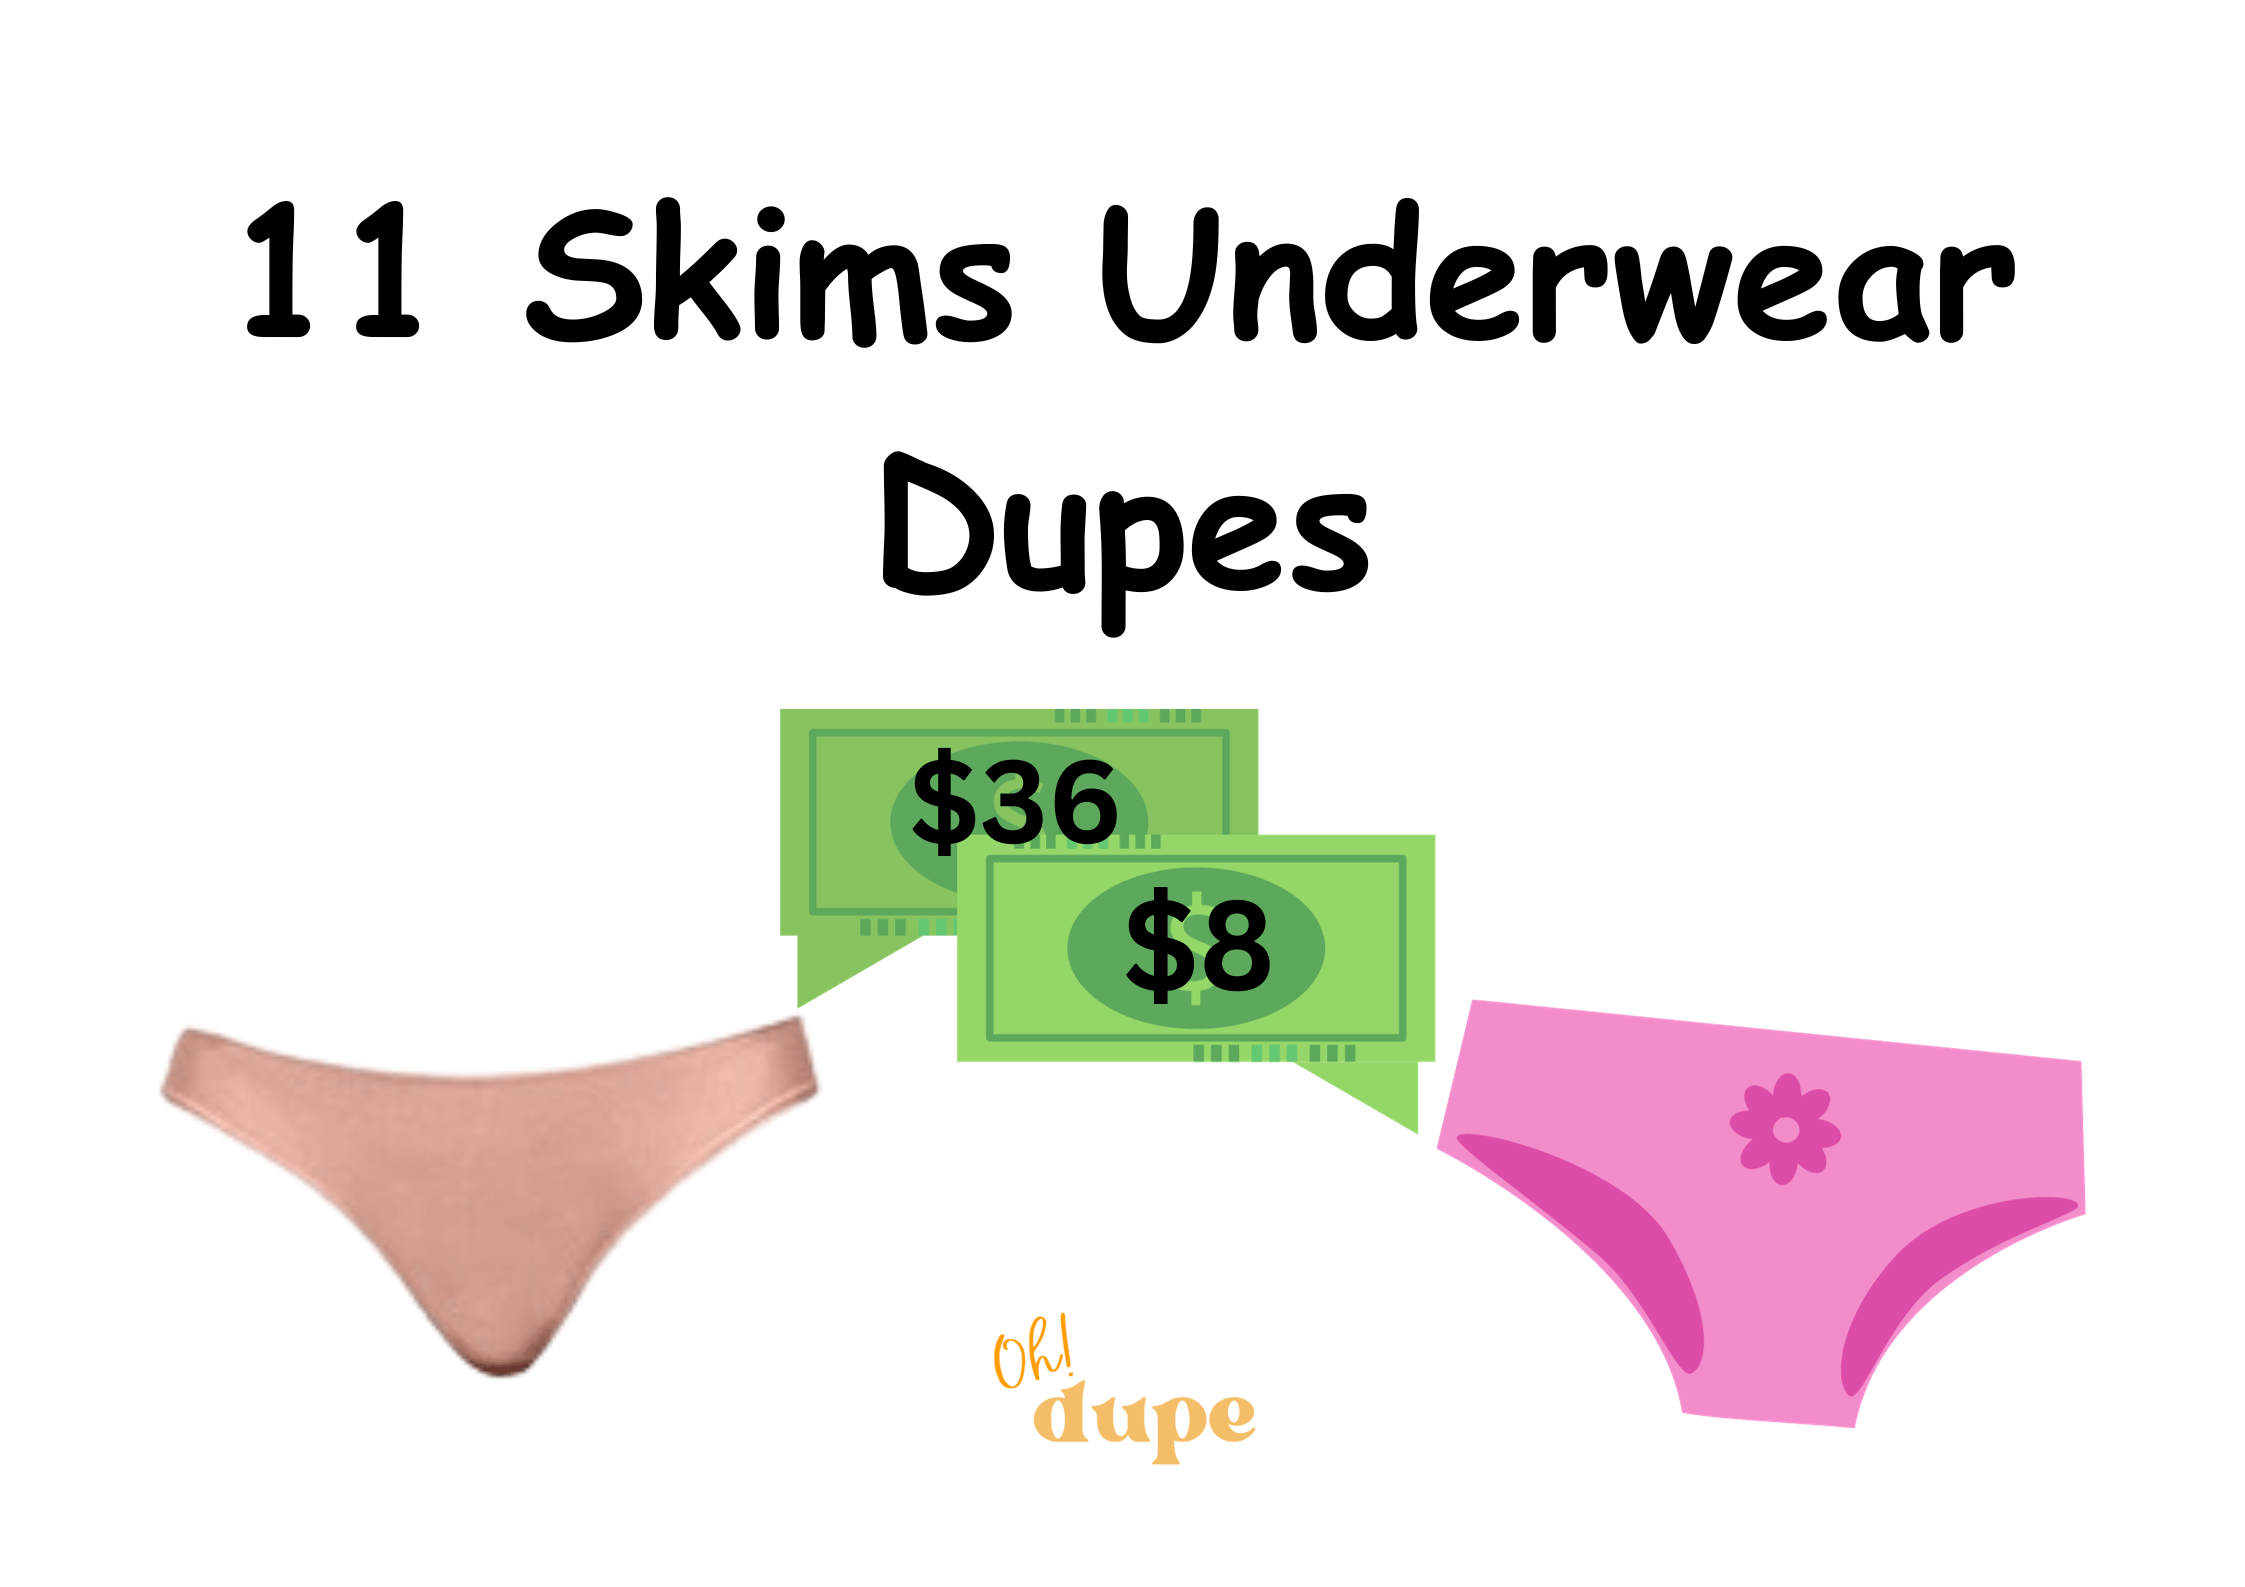 Skims Underwear Dupes